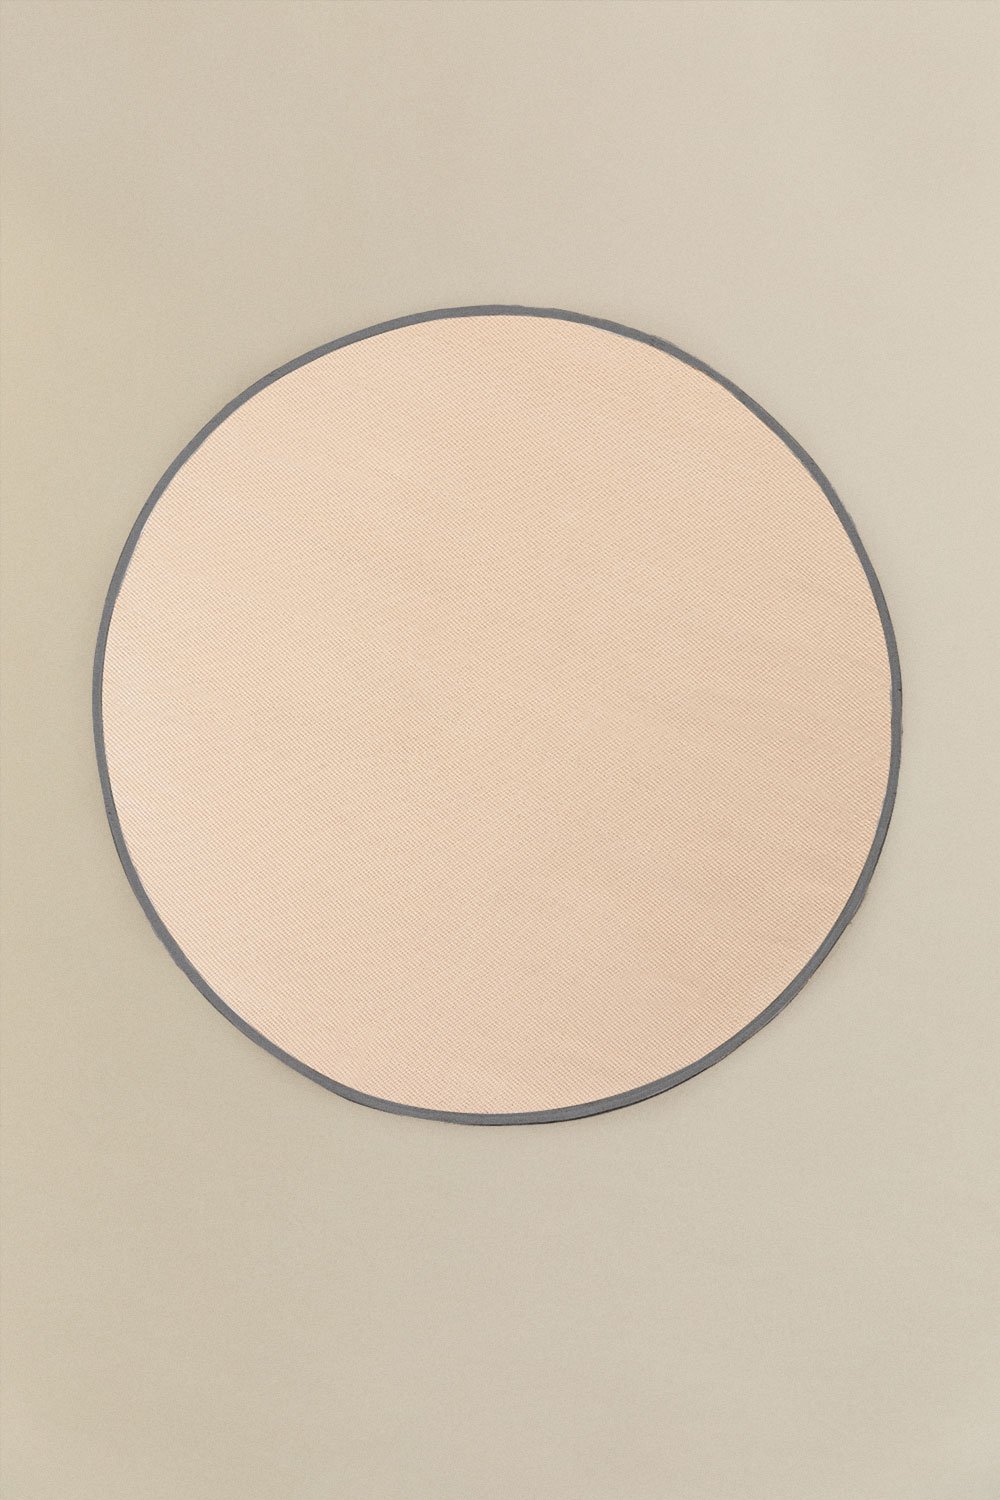 Tappeto rotondo per esterni (Ø170 cm) Tanida, immagine della galleria 1